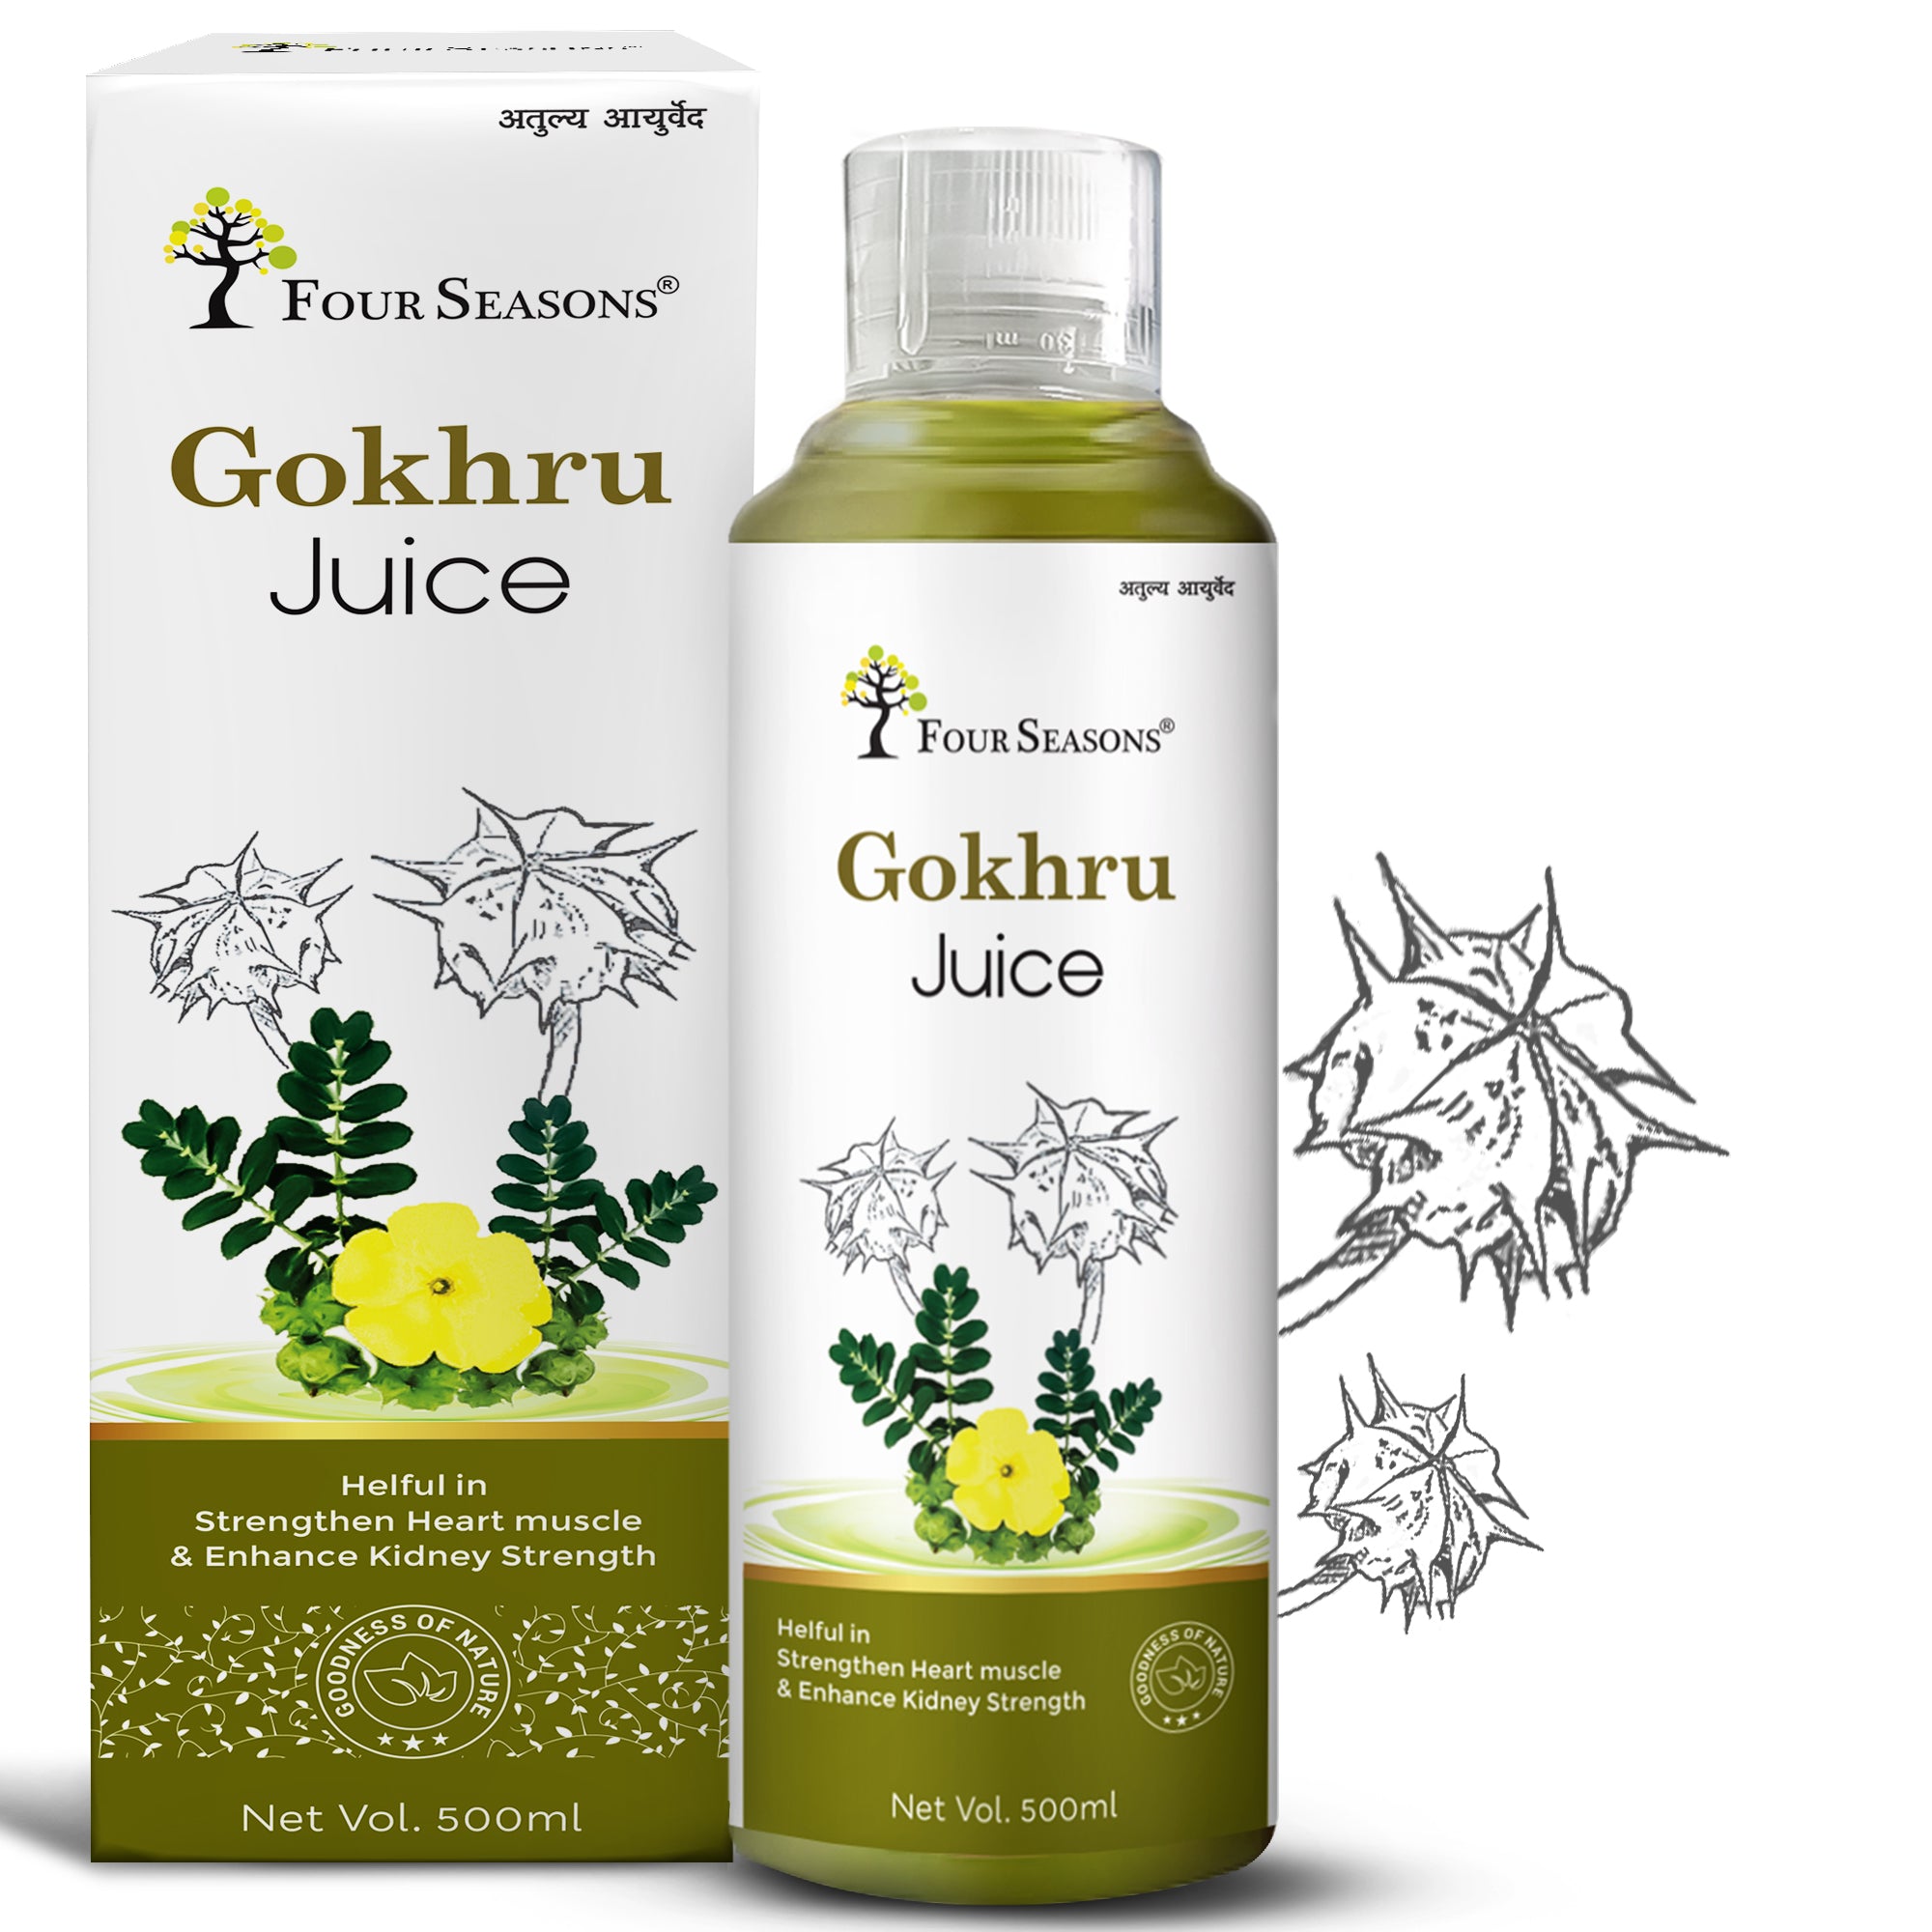 Gokhru Juice